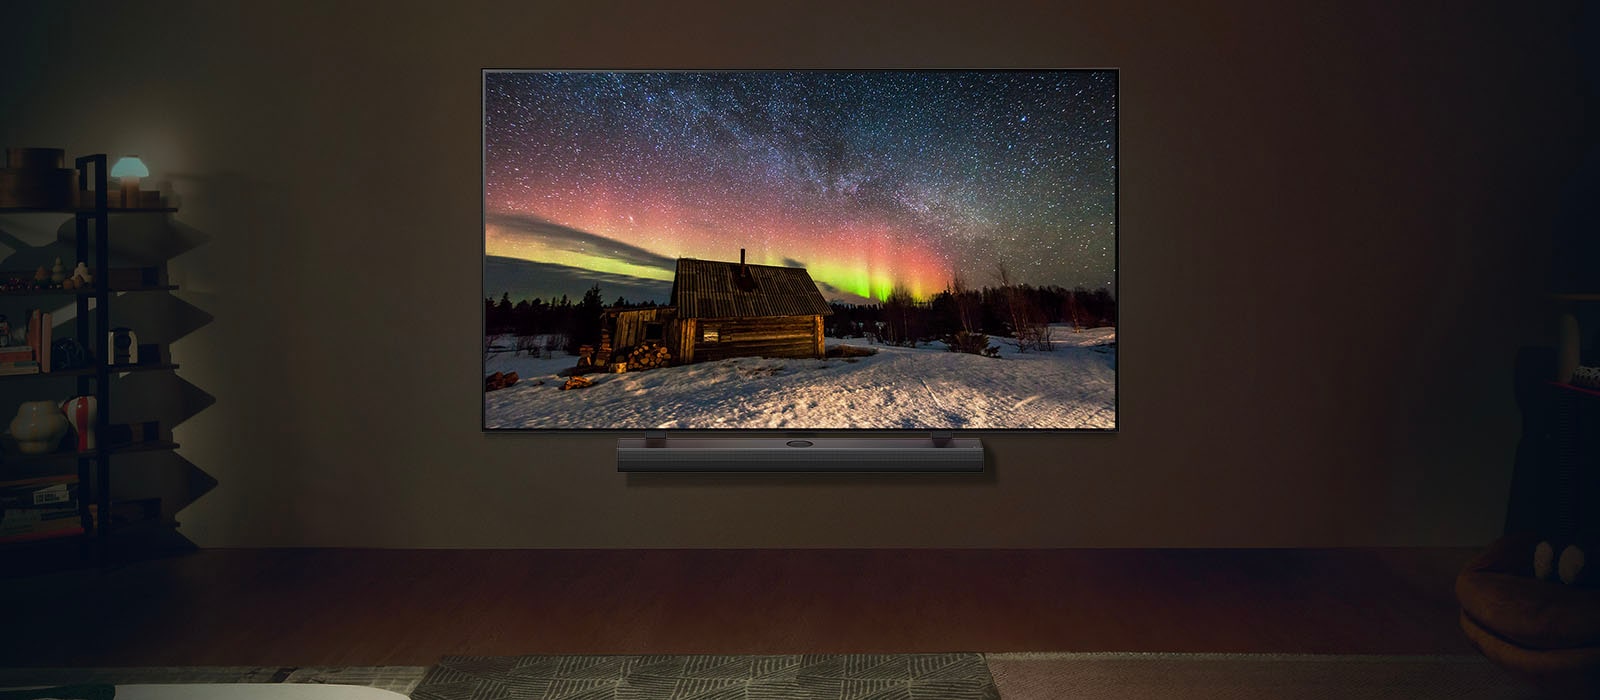 LG-Fernseher und LG Soundbar in einem modernen Wohnraum bei Nacht. Die Darstellung des Polarlichts auf dem Bildschirm erfolgt in der idealen Helligkeit.